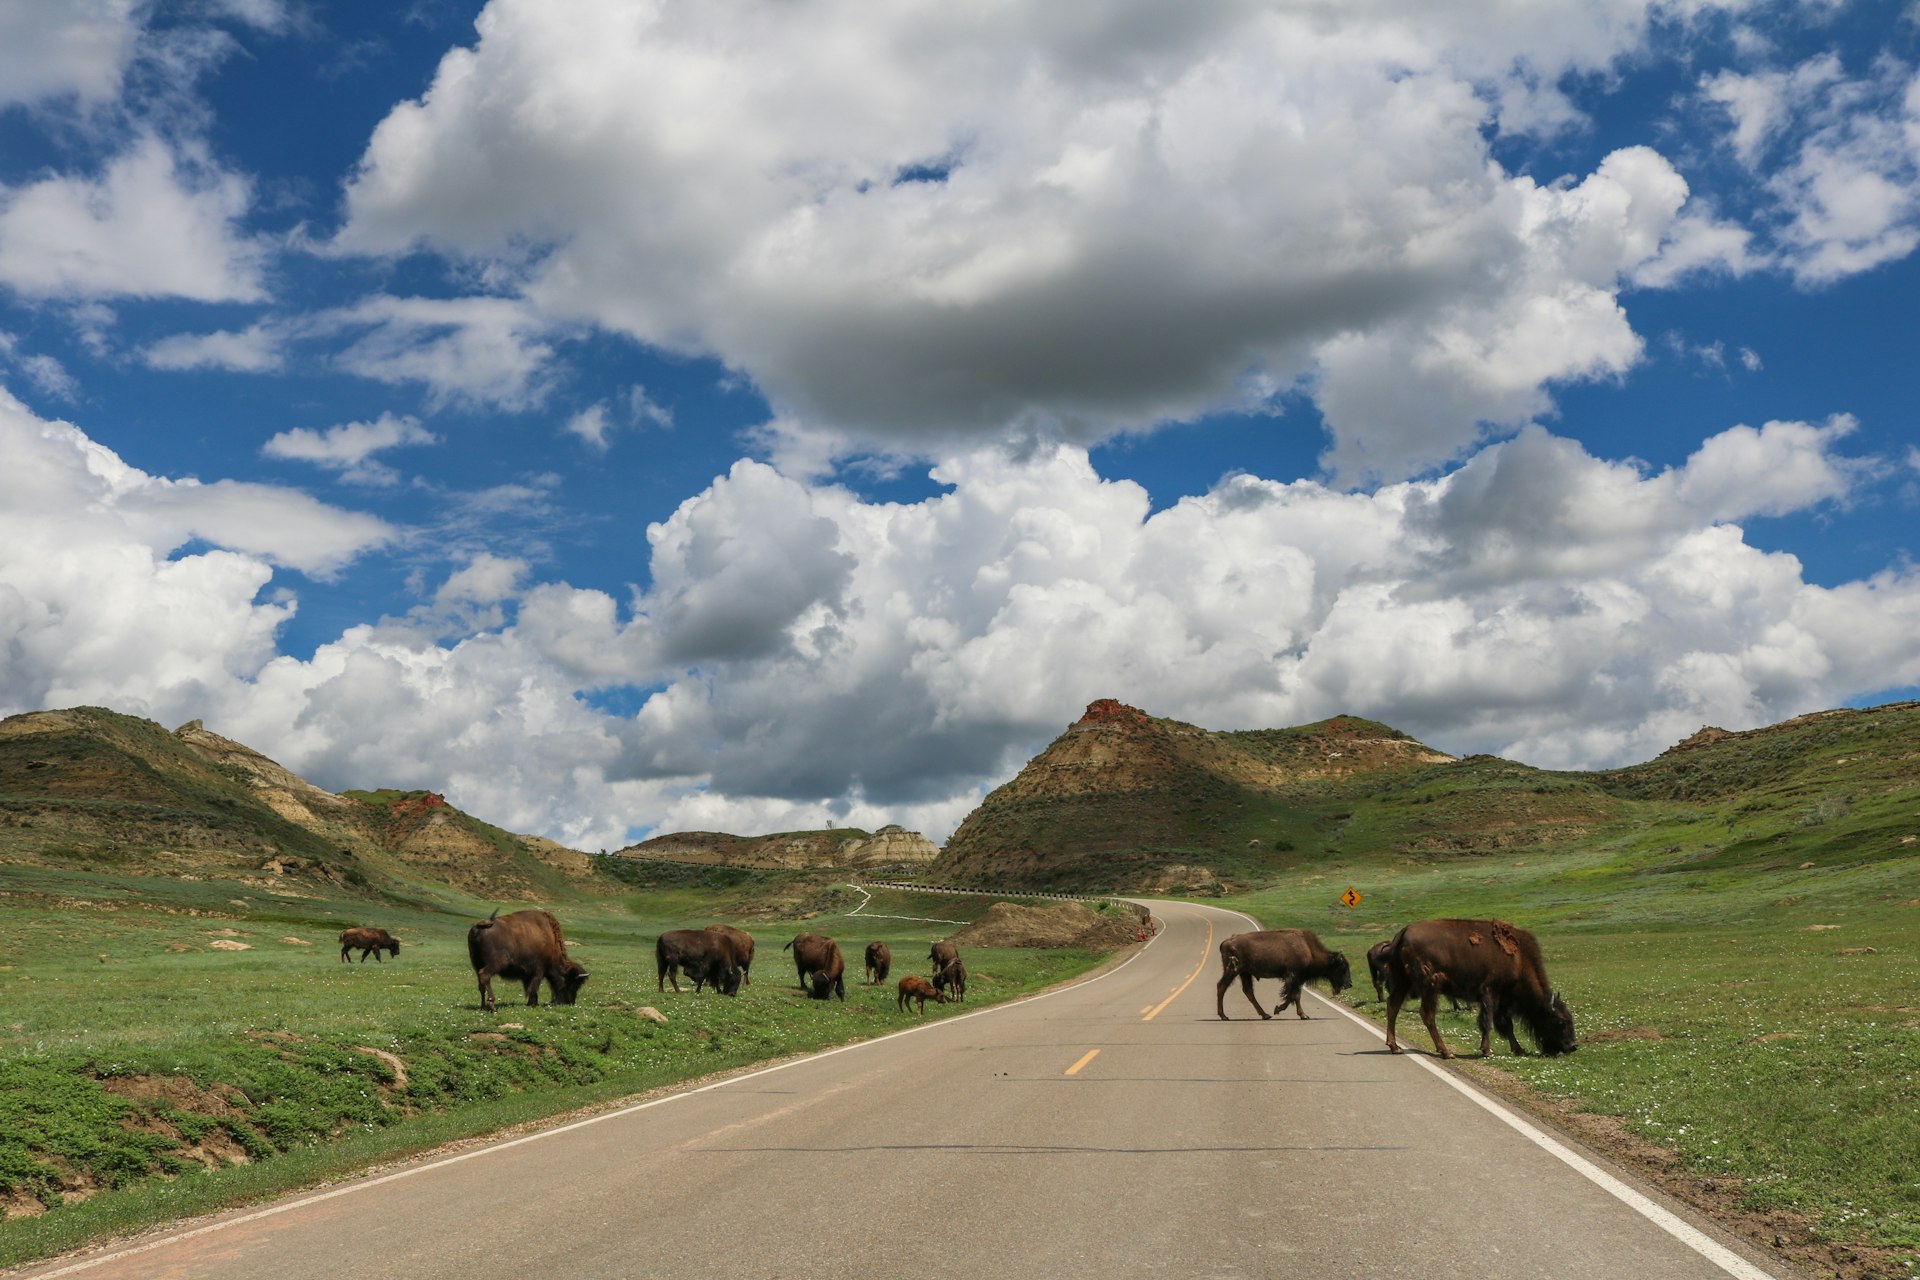 bison in Theodore Roosevelt National Park, North Dakota